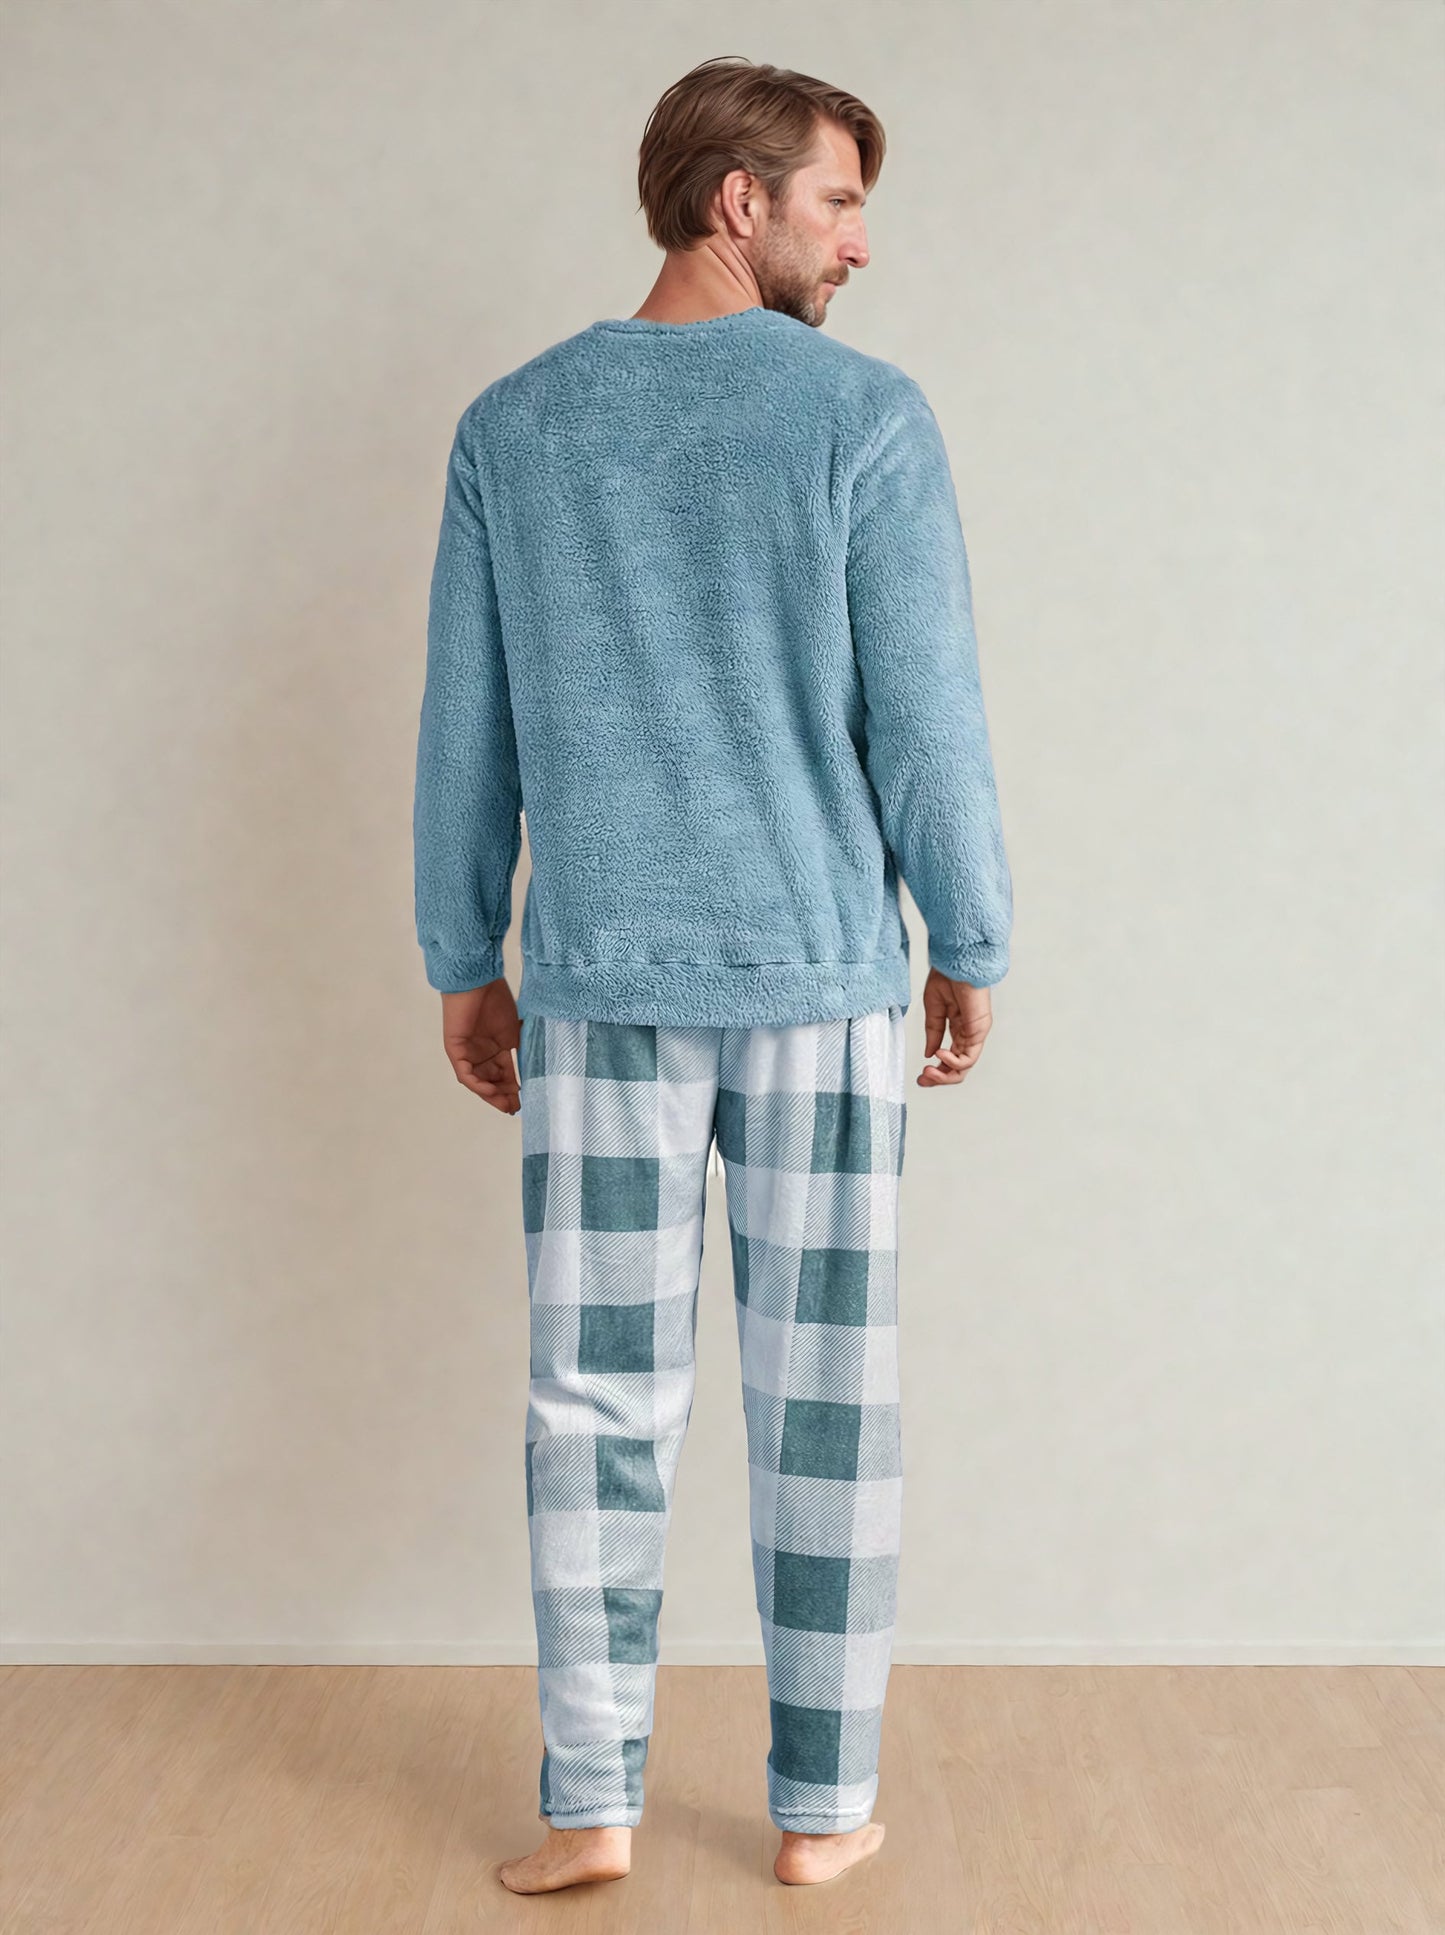 Men Pajama Set Pattern, Pajama Pattern for Men, Pajama Pants pattern, Loungewear Pattern PDF, Men Sewing Patterns Pyjama, Pajama for Men